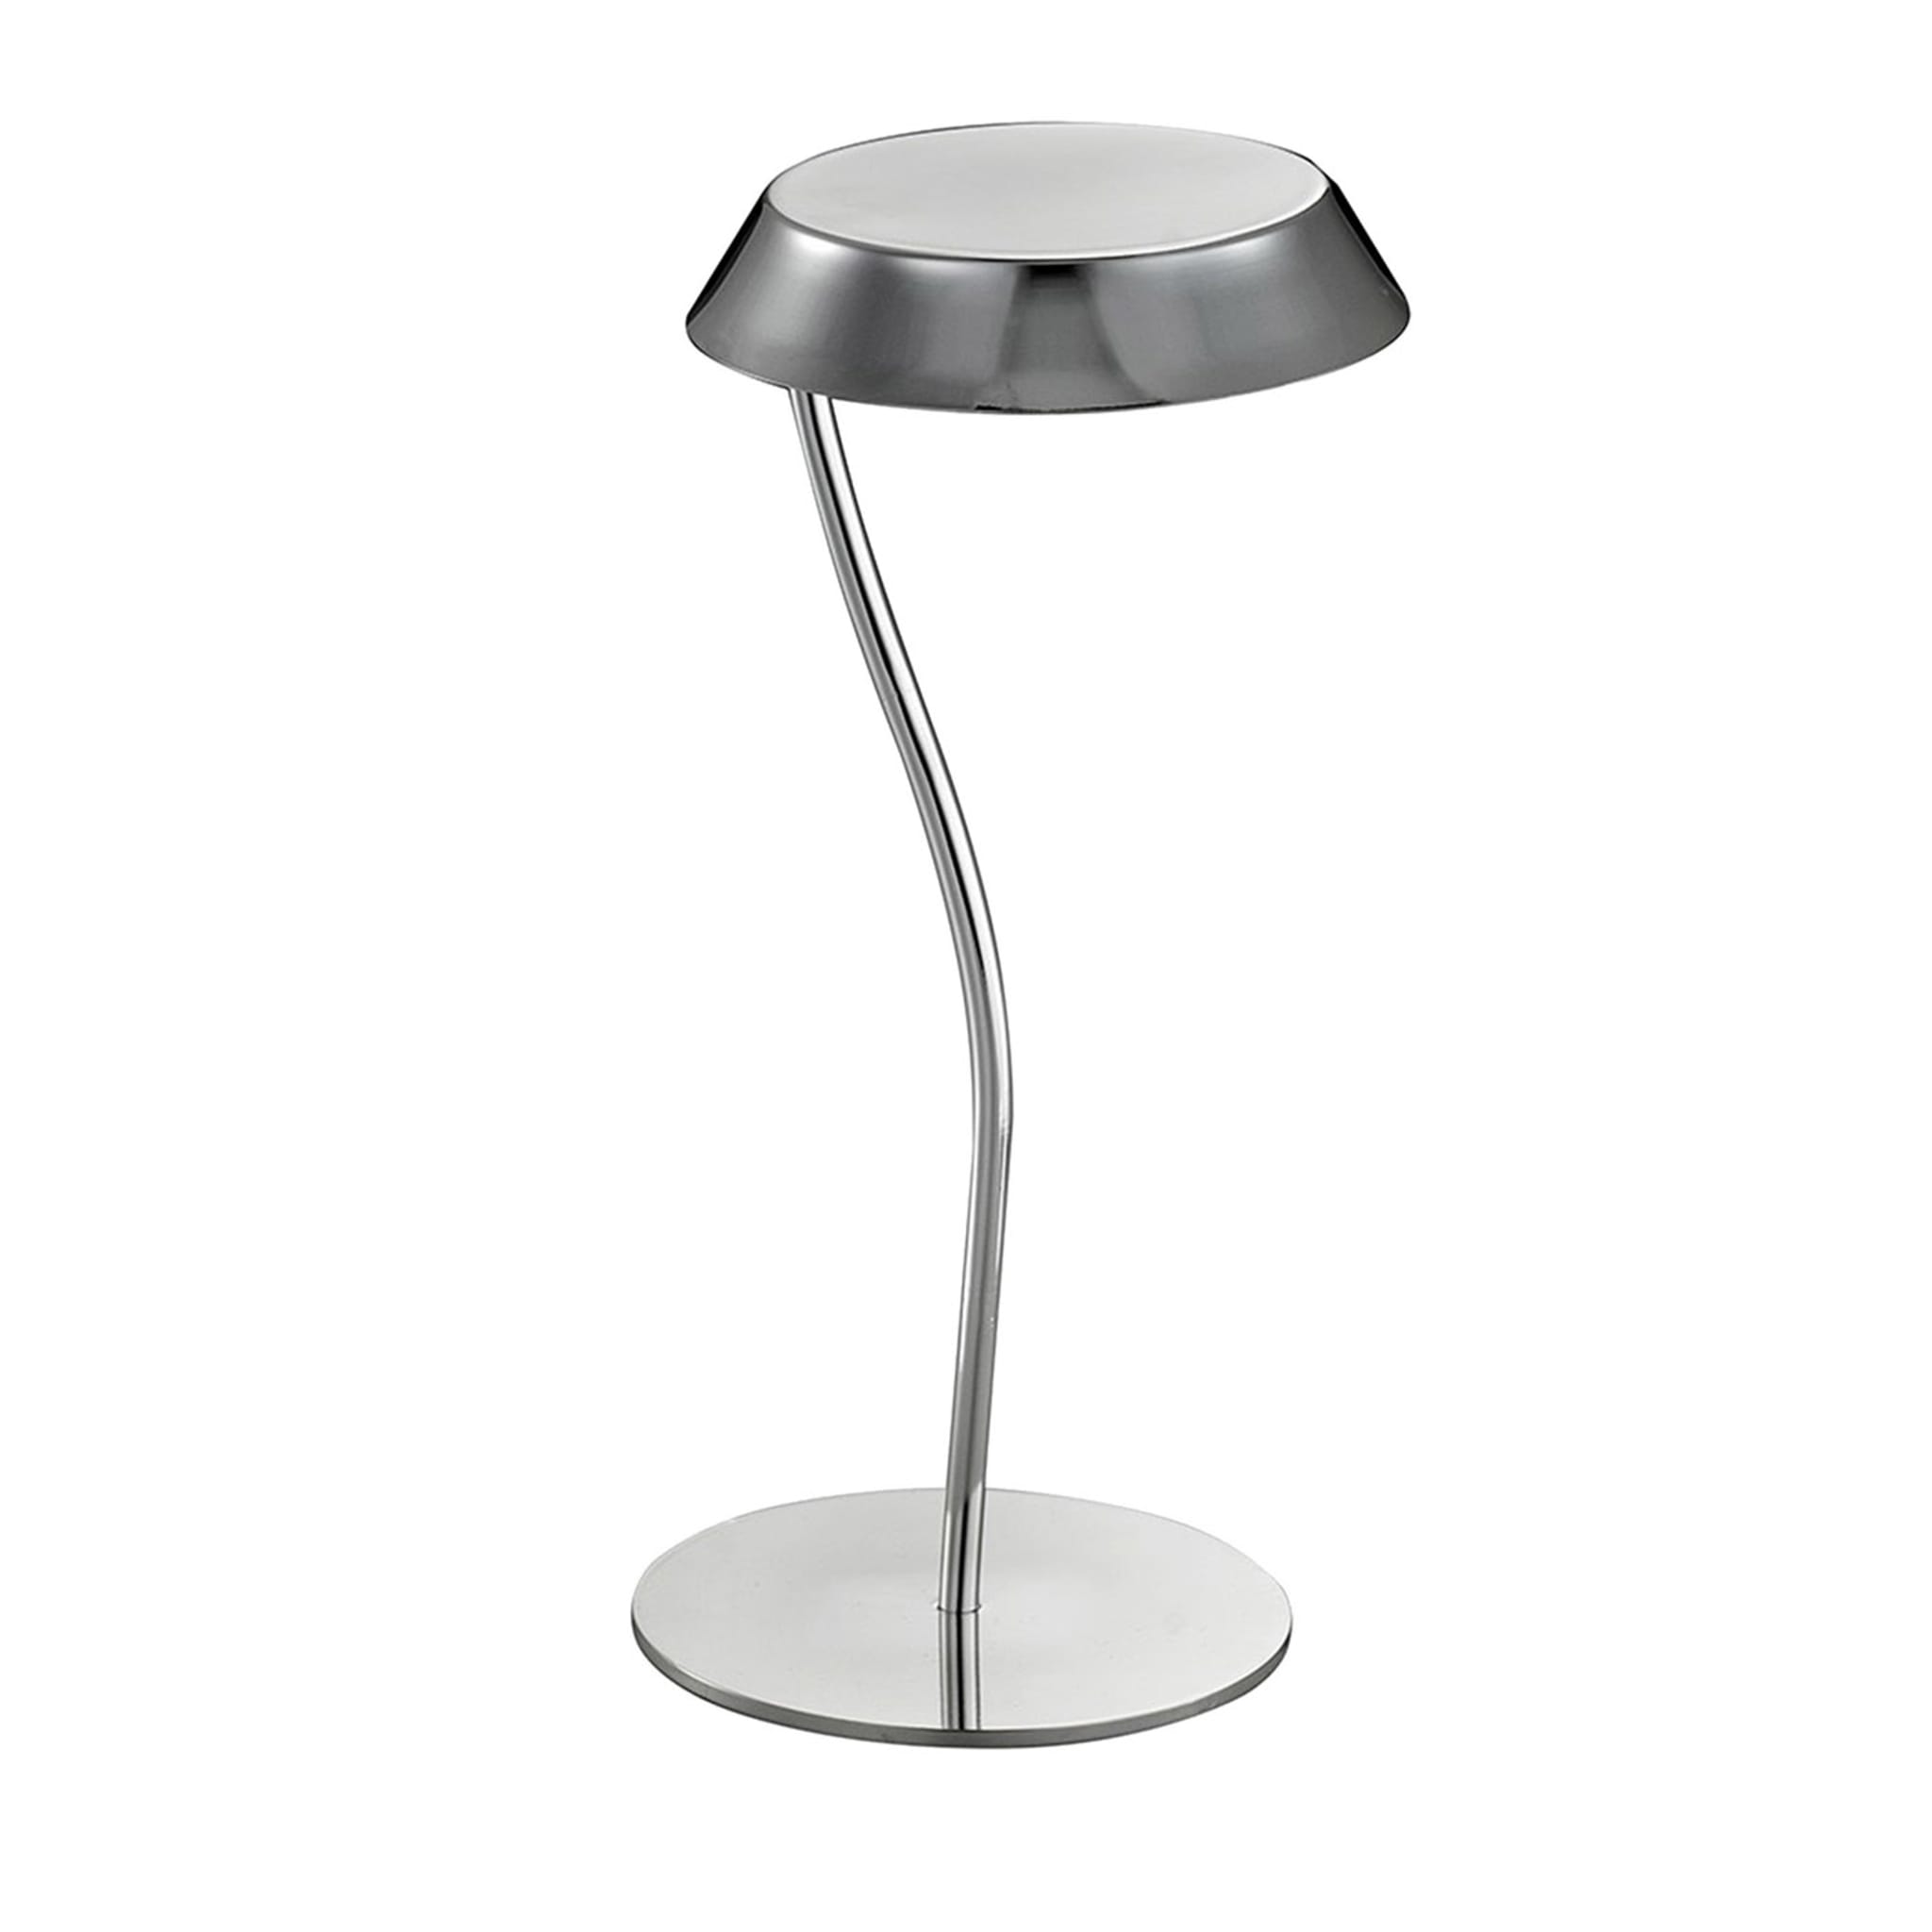 Stelo Small Table Lamp by Itamar Harari - Main view